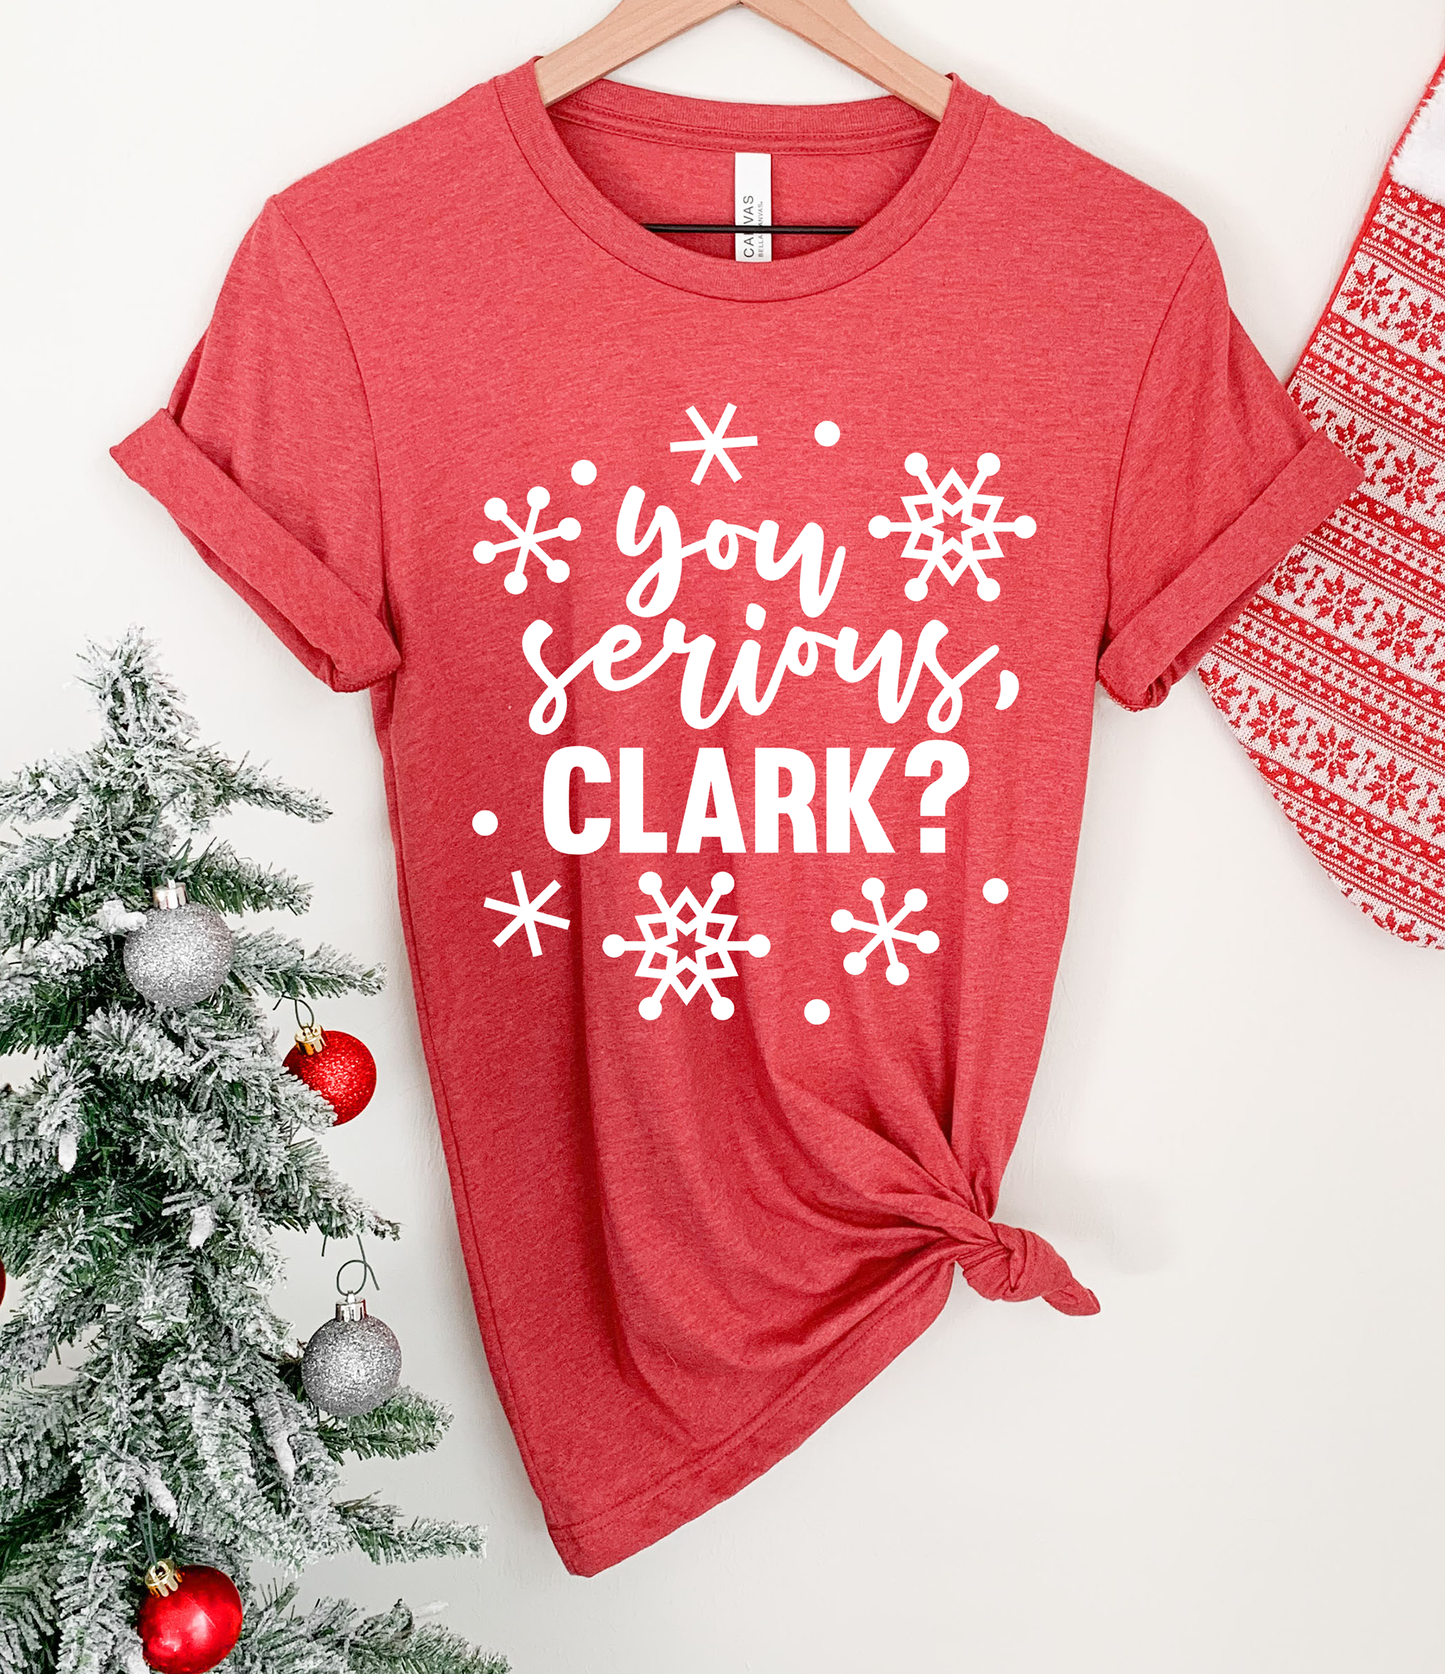 You Serious Clark? Tee